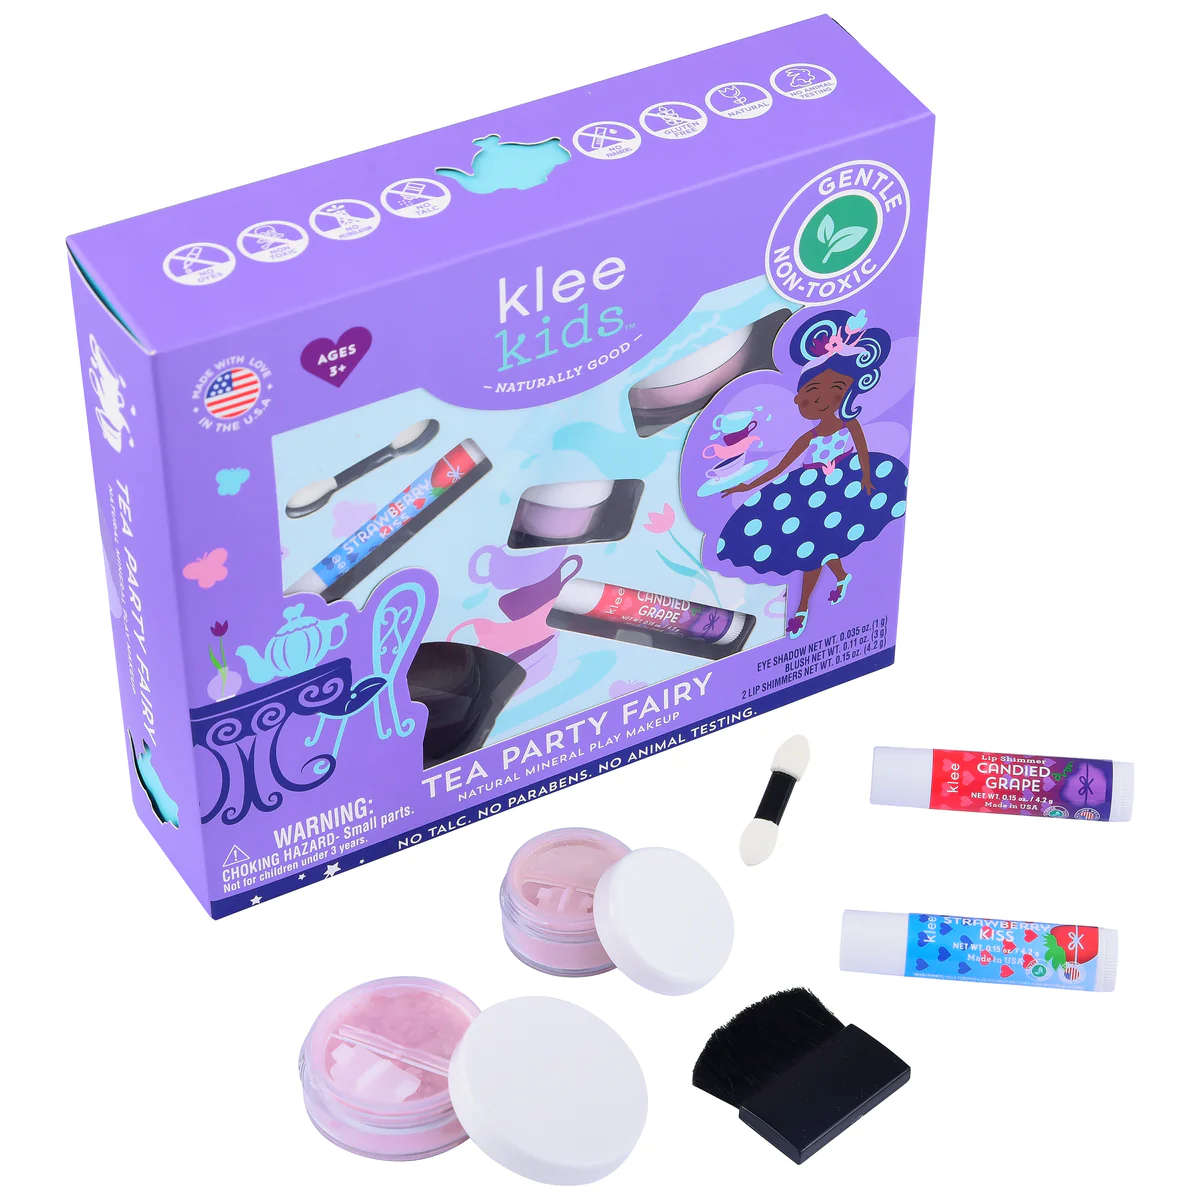 Klee Tea Party Fairy Makeup Set